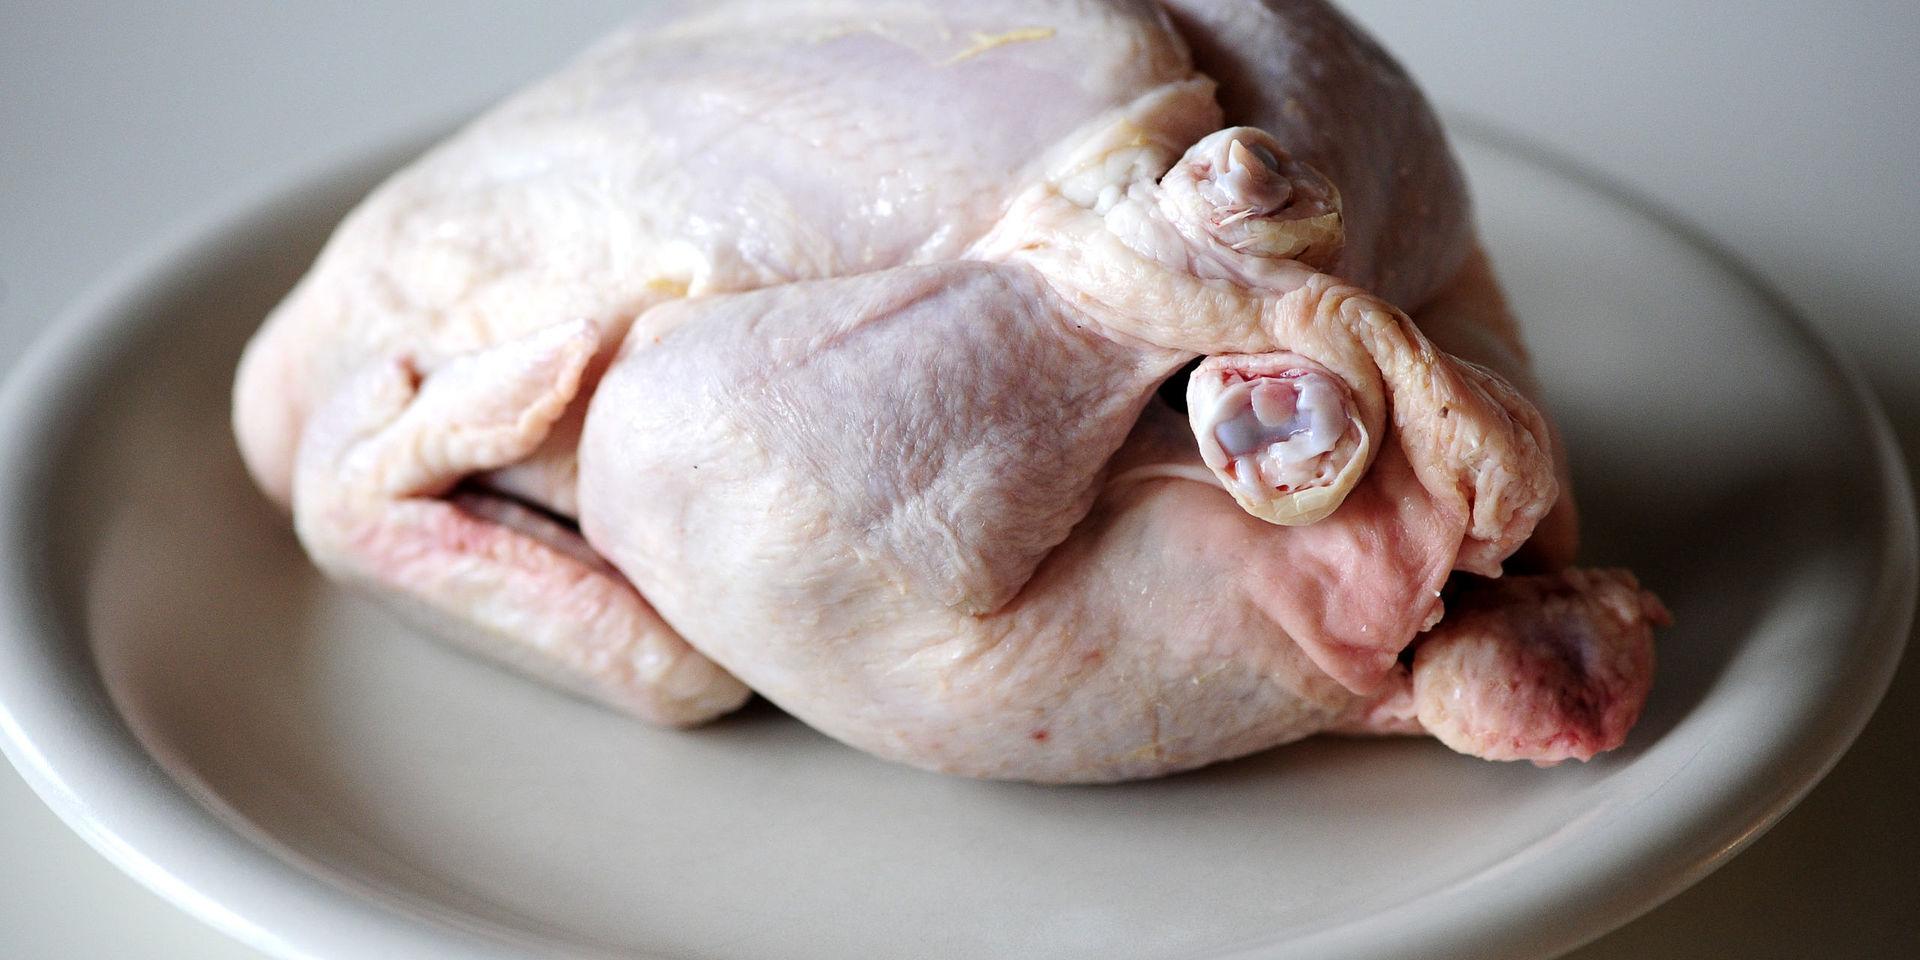 I Livsmedelsverkets senaste kontroll innehöll 61 procent av kycklingen campylobacter.